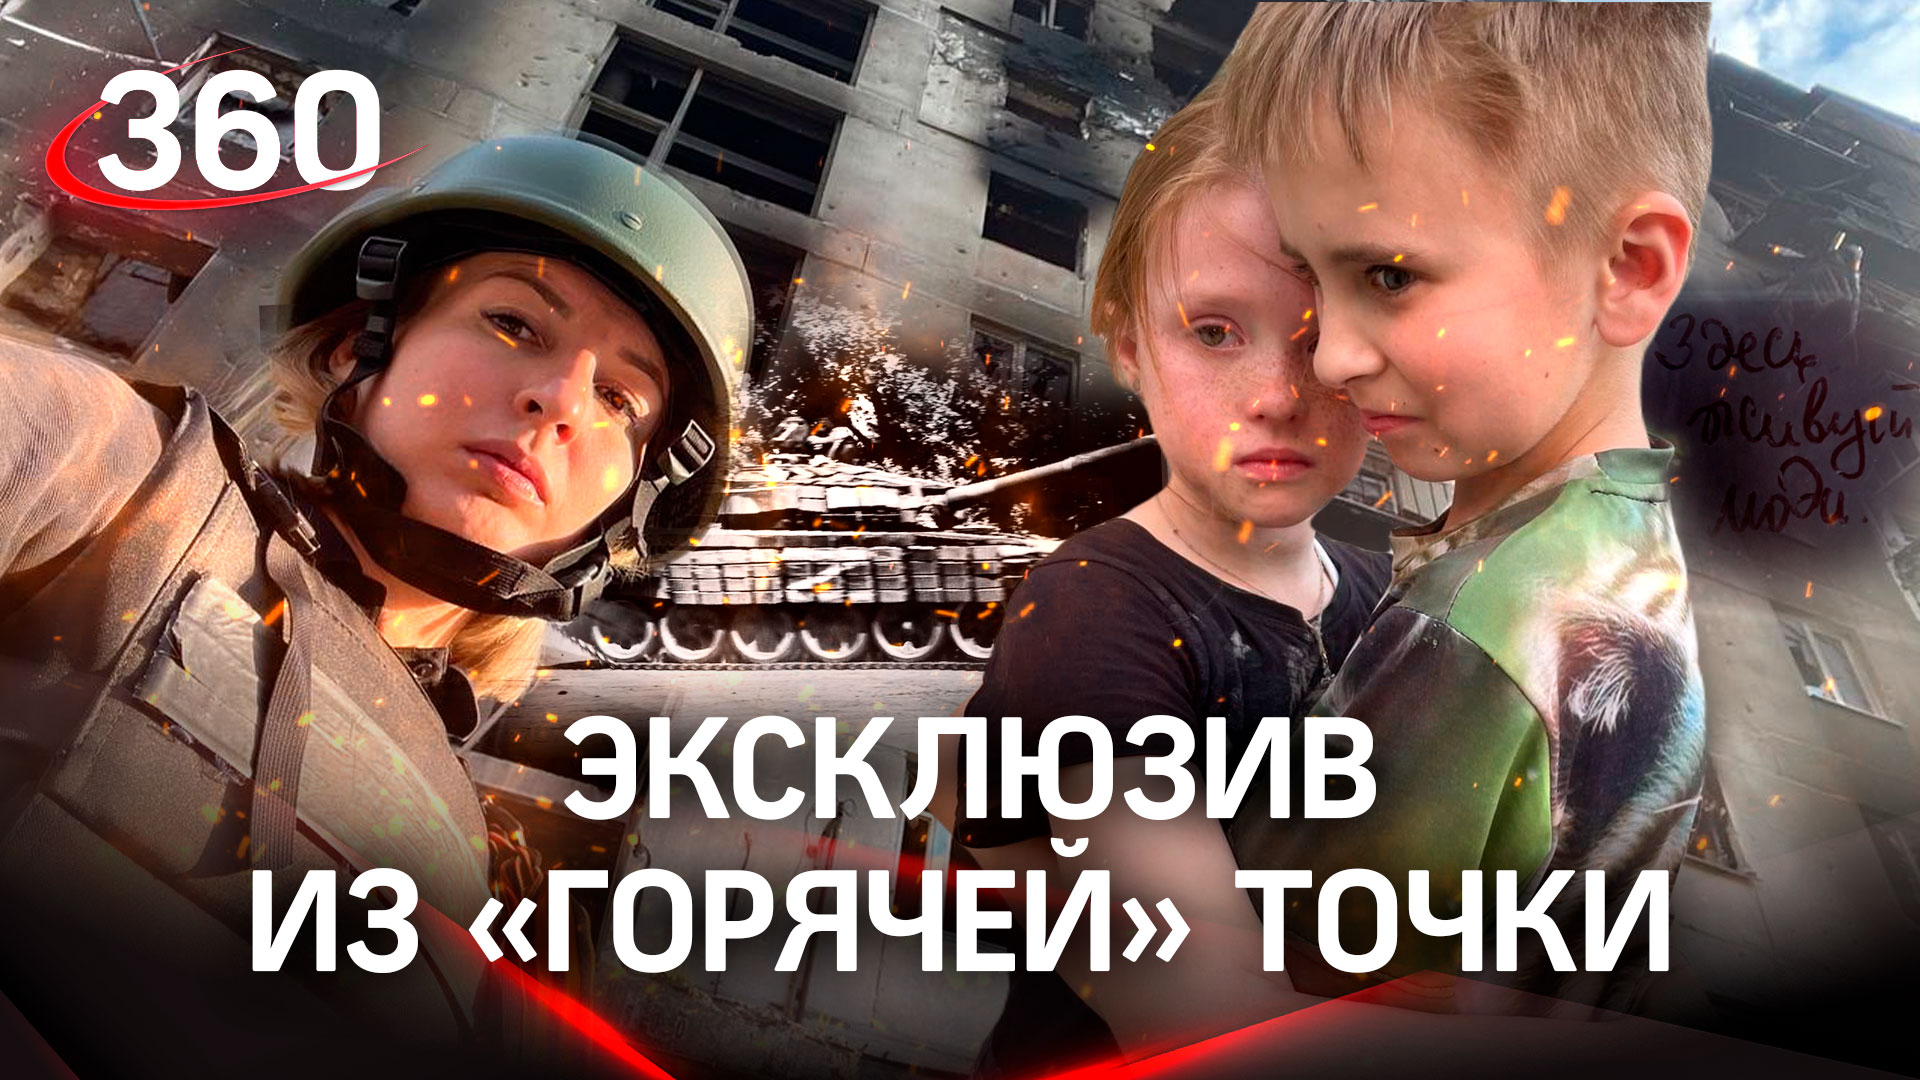 Северодонецк глазами корреспондента "360": под обстрелами, без связи - специальный репортаж